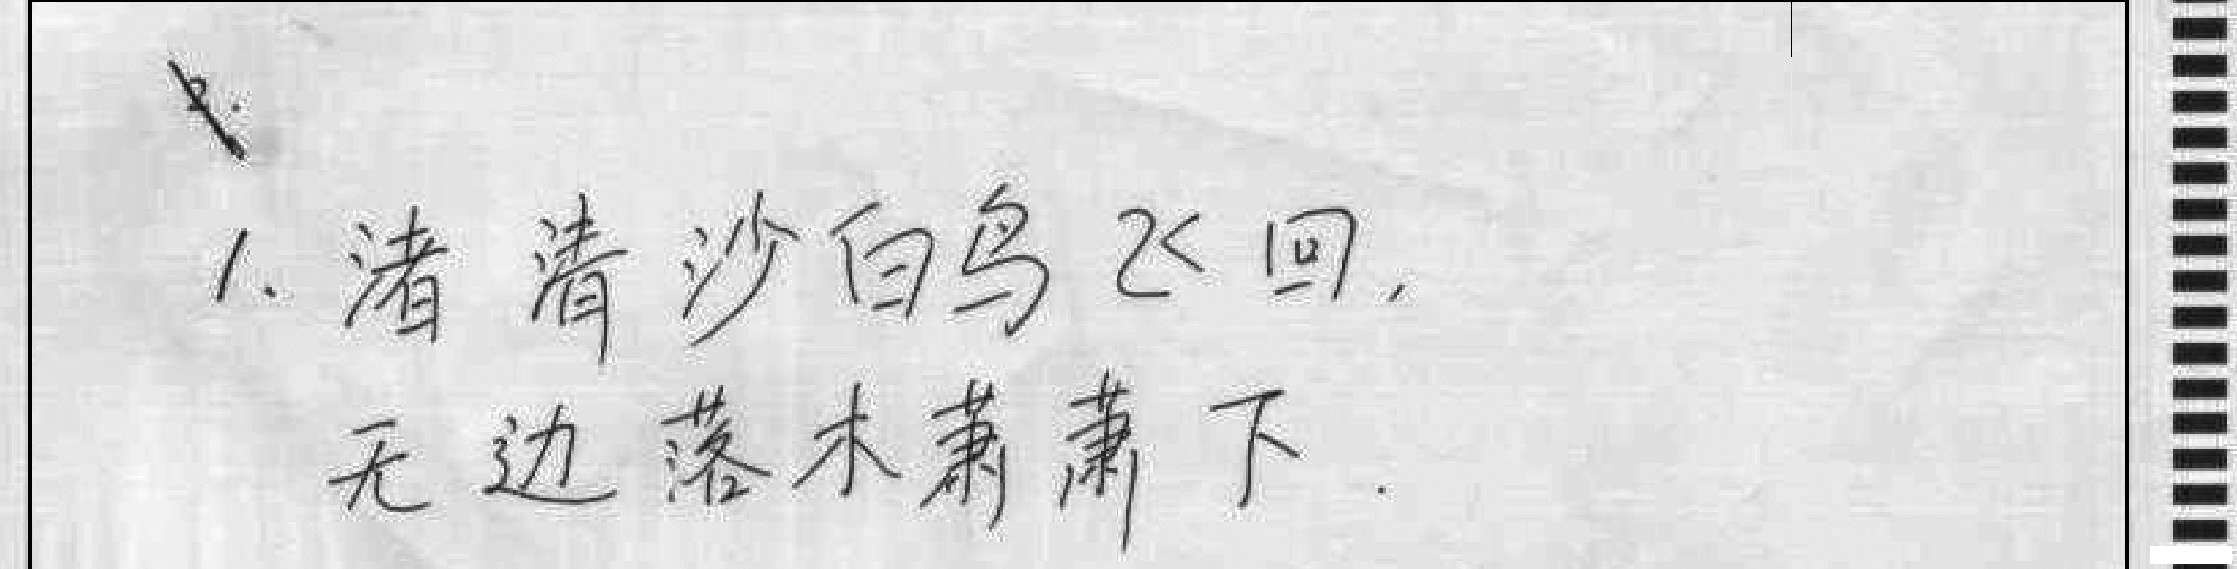 【中考须知】2014广州中考答题卡填涂及答题的正确方法3